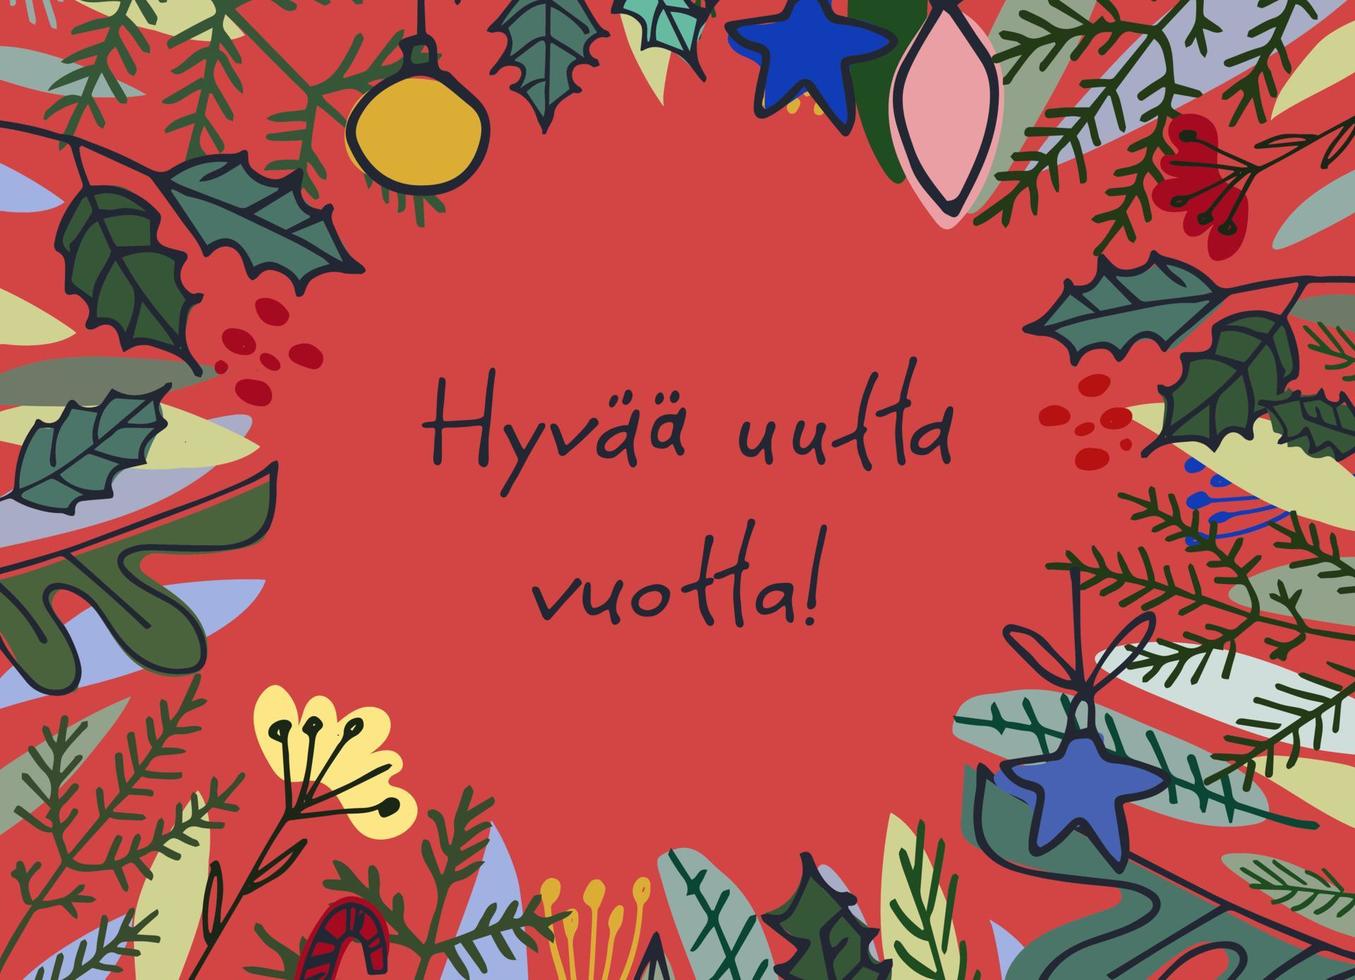 hyvaa huutta vuotta. carte de voeux du nouvel an finlandais. design élégant avec sapins dessinés à la main et lettrage à la main sur fond turquoise. texte en finnois dit bonne année vecteur